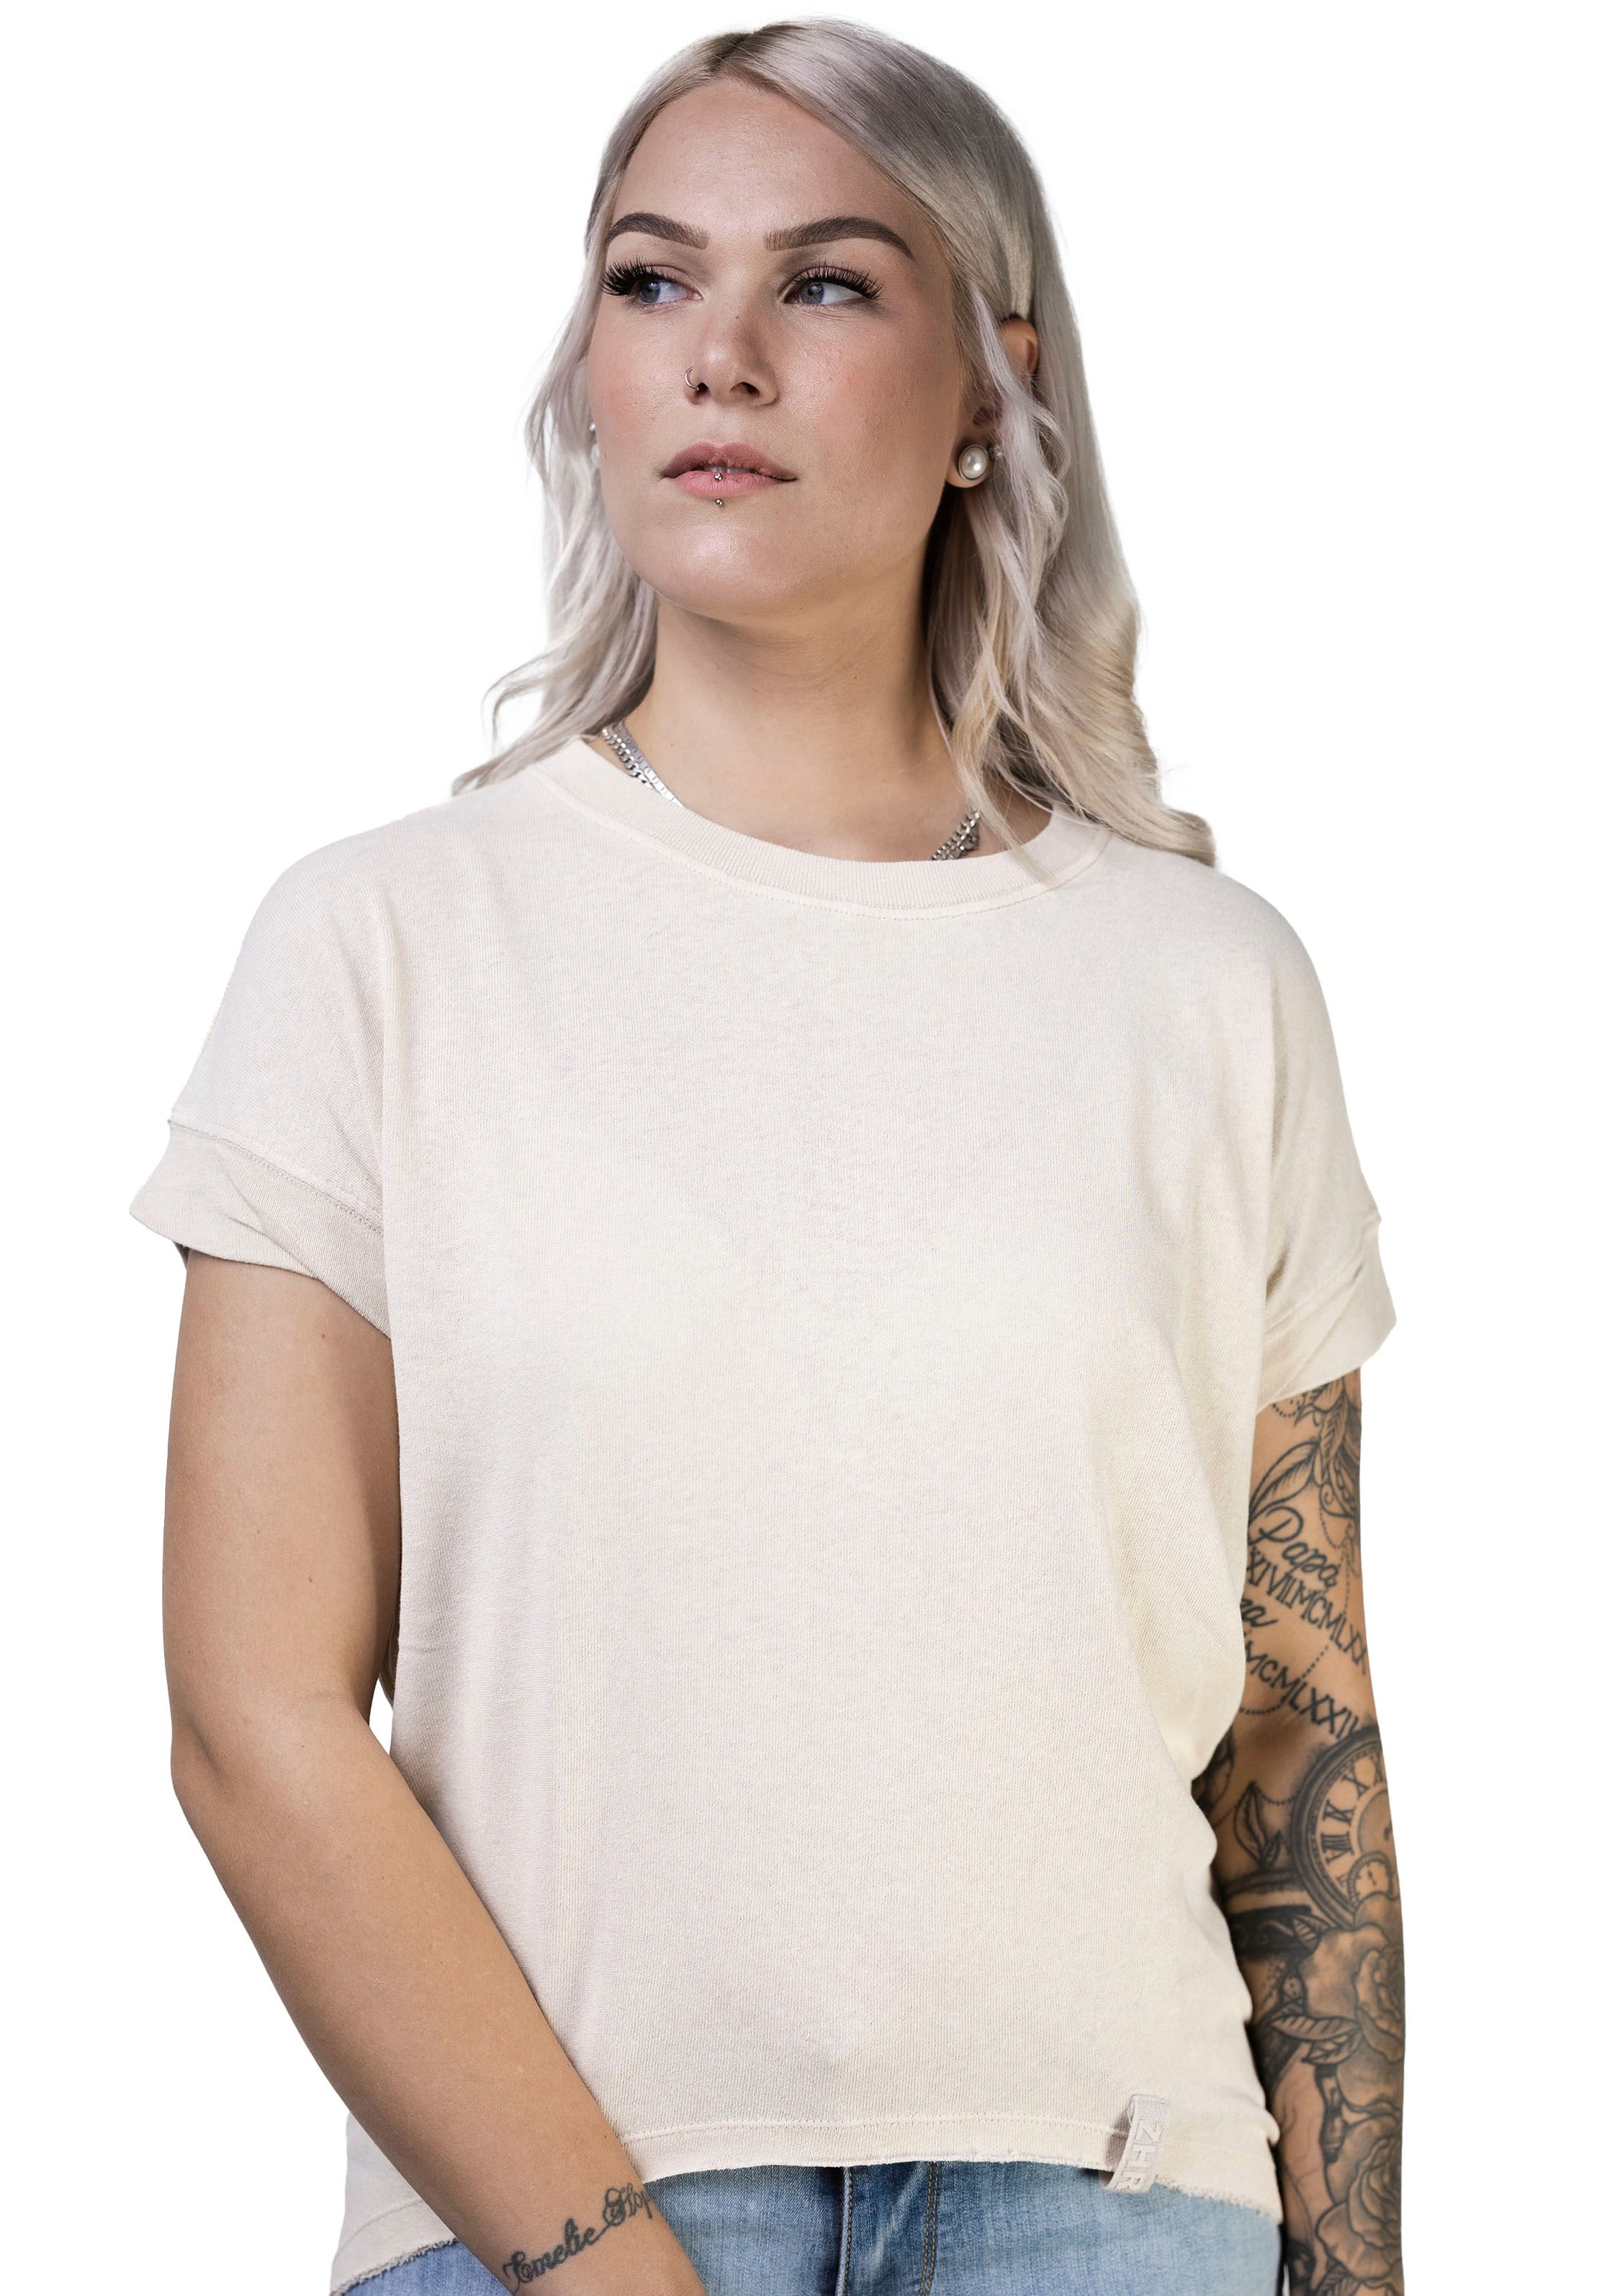 Zhrill T-Shirt kaufen online bei OTTO